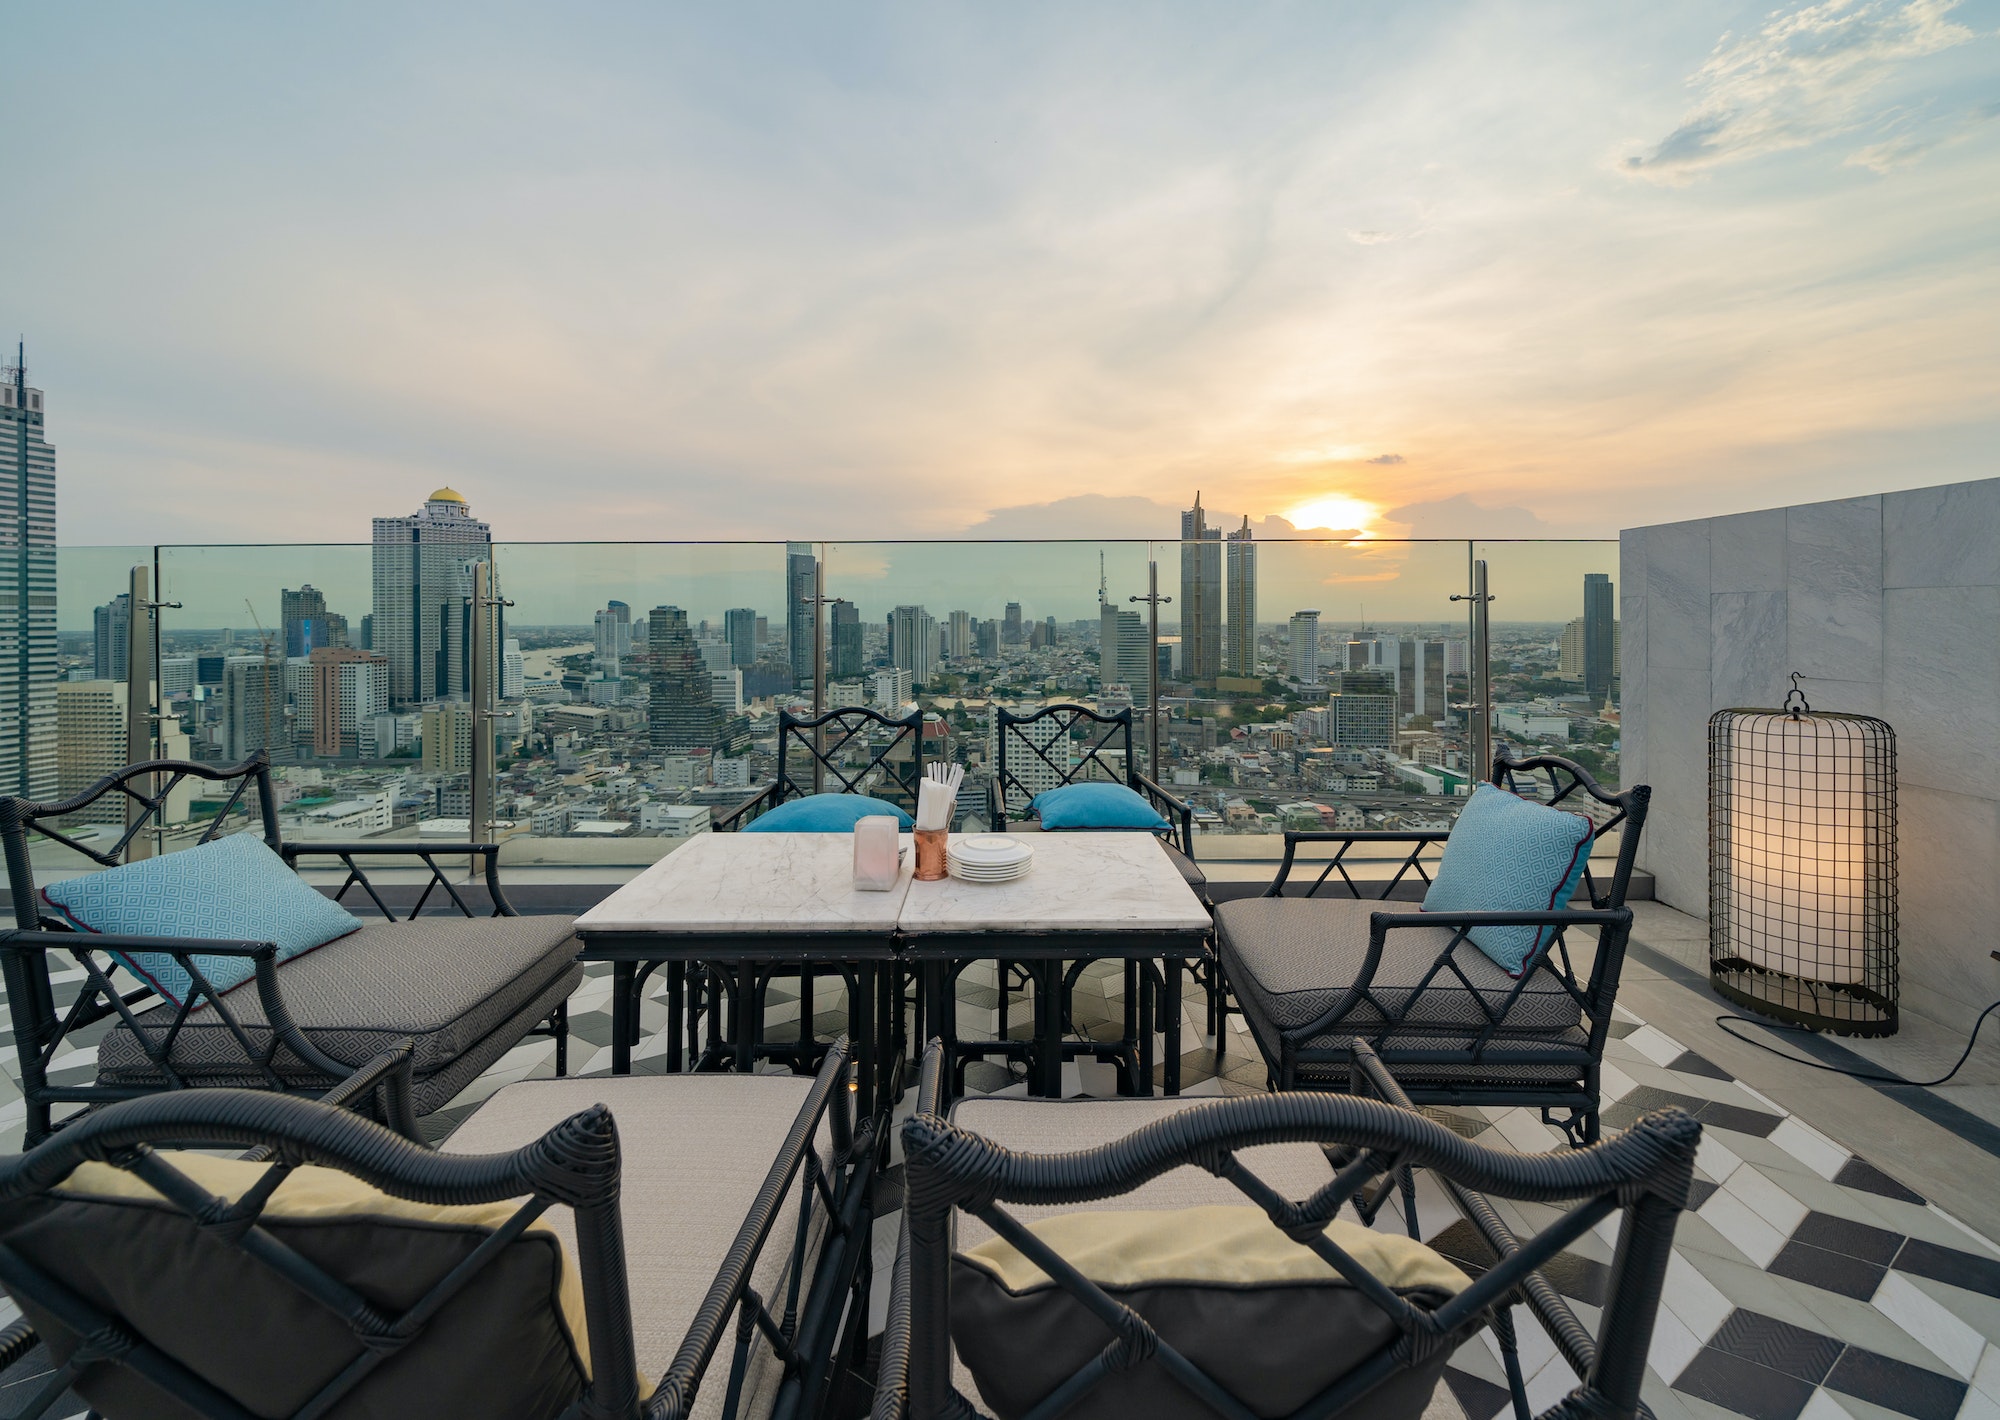 Une terrasse de restaurant ou de café-salon avec table à dîner sur le toit de l'hôtel, avec vue sur la ville